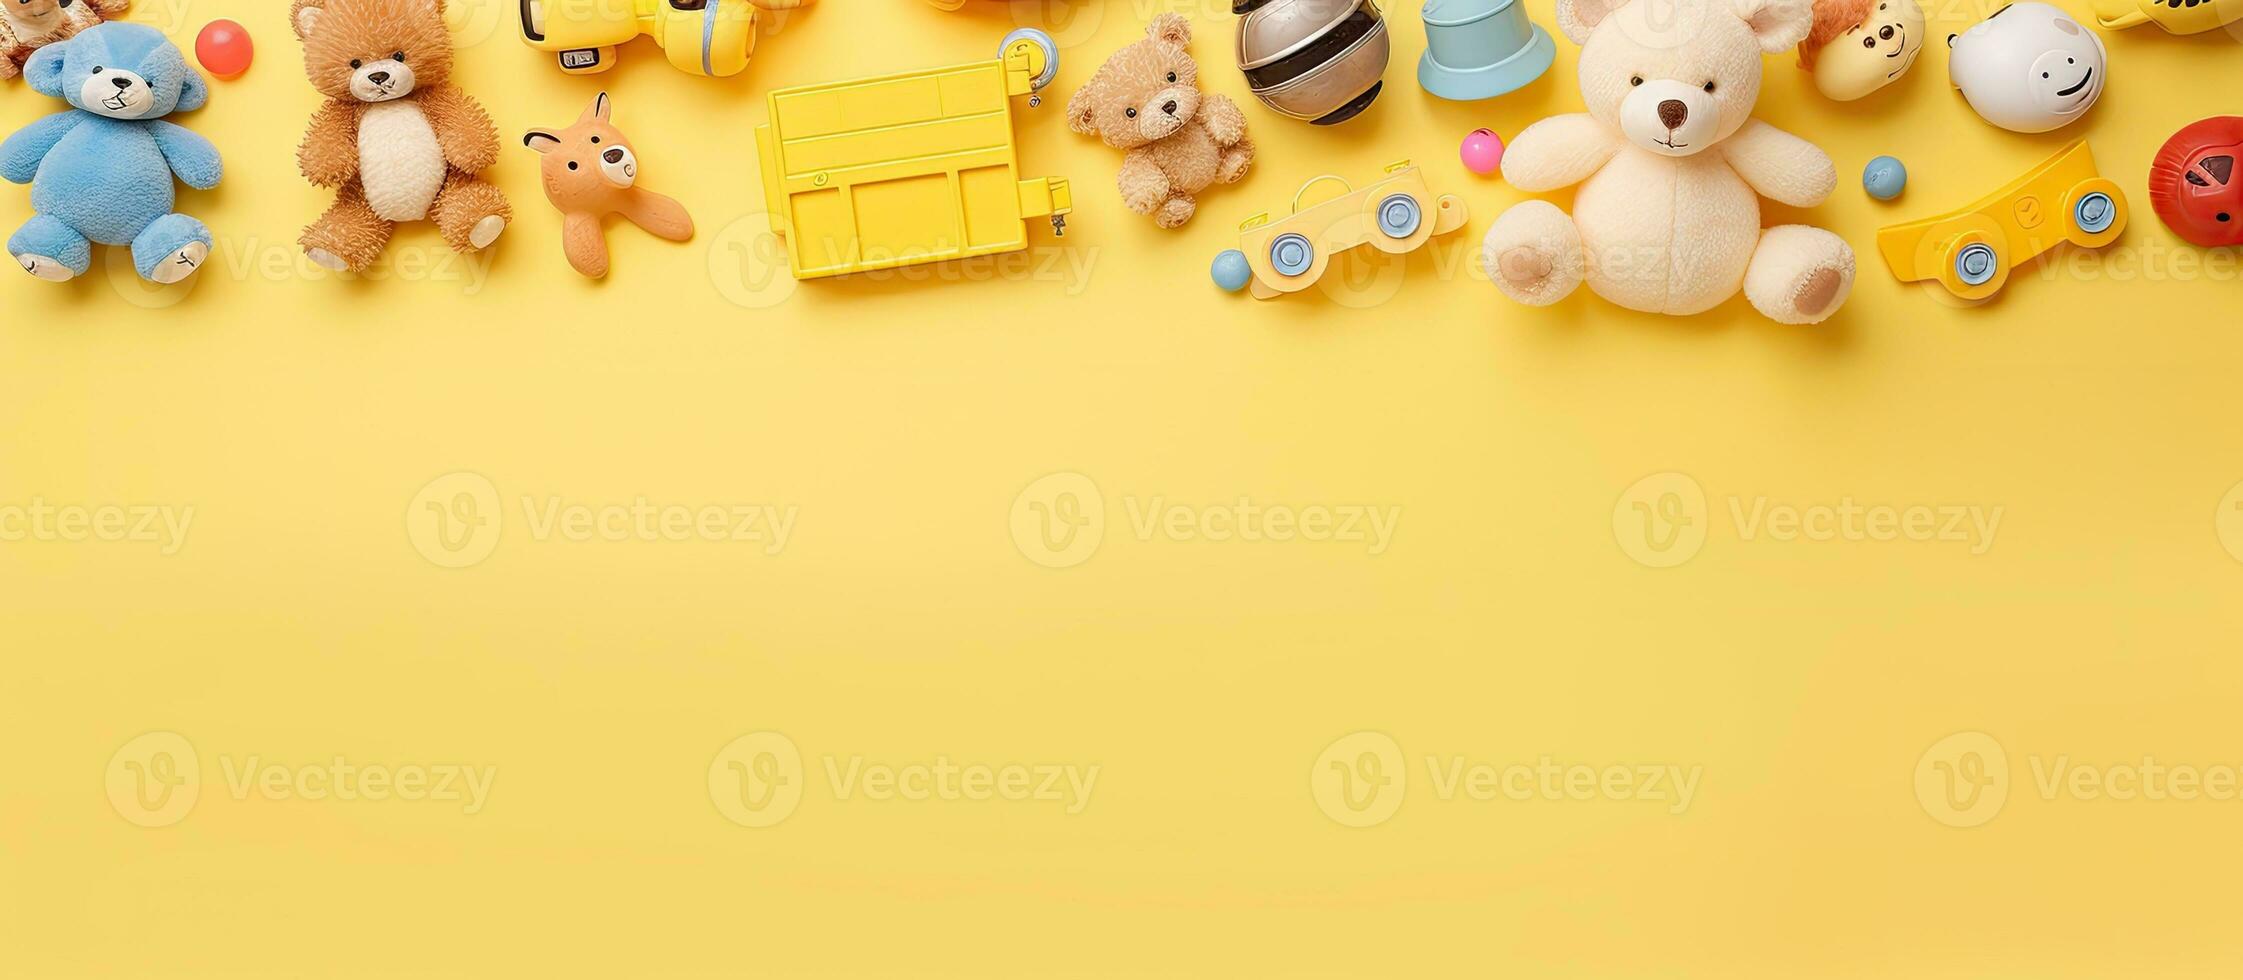 colección de bebé y niños juguetes metido en un pastel amarillo antecedentes. el fotografía es tomado foto